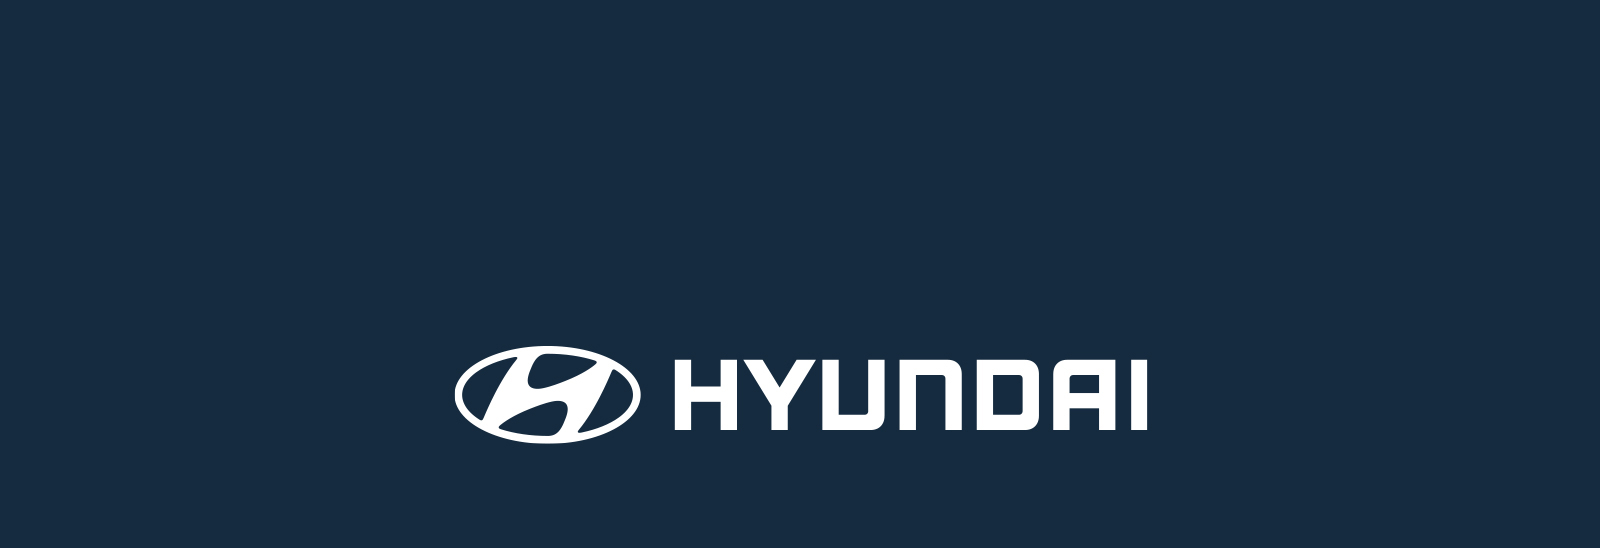 Logo de Hyundai con fondo azul